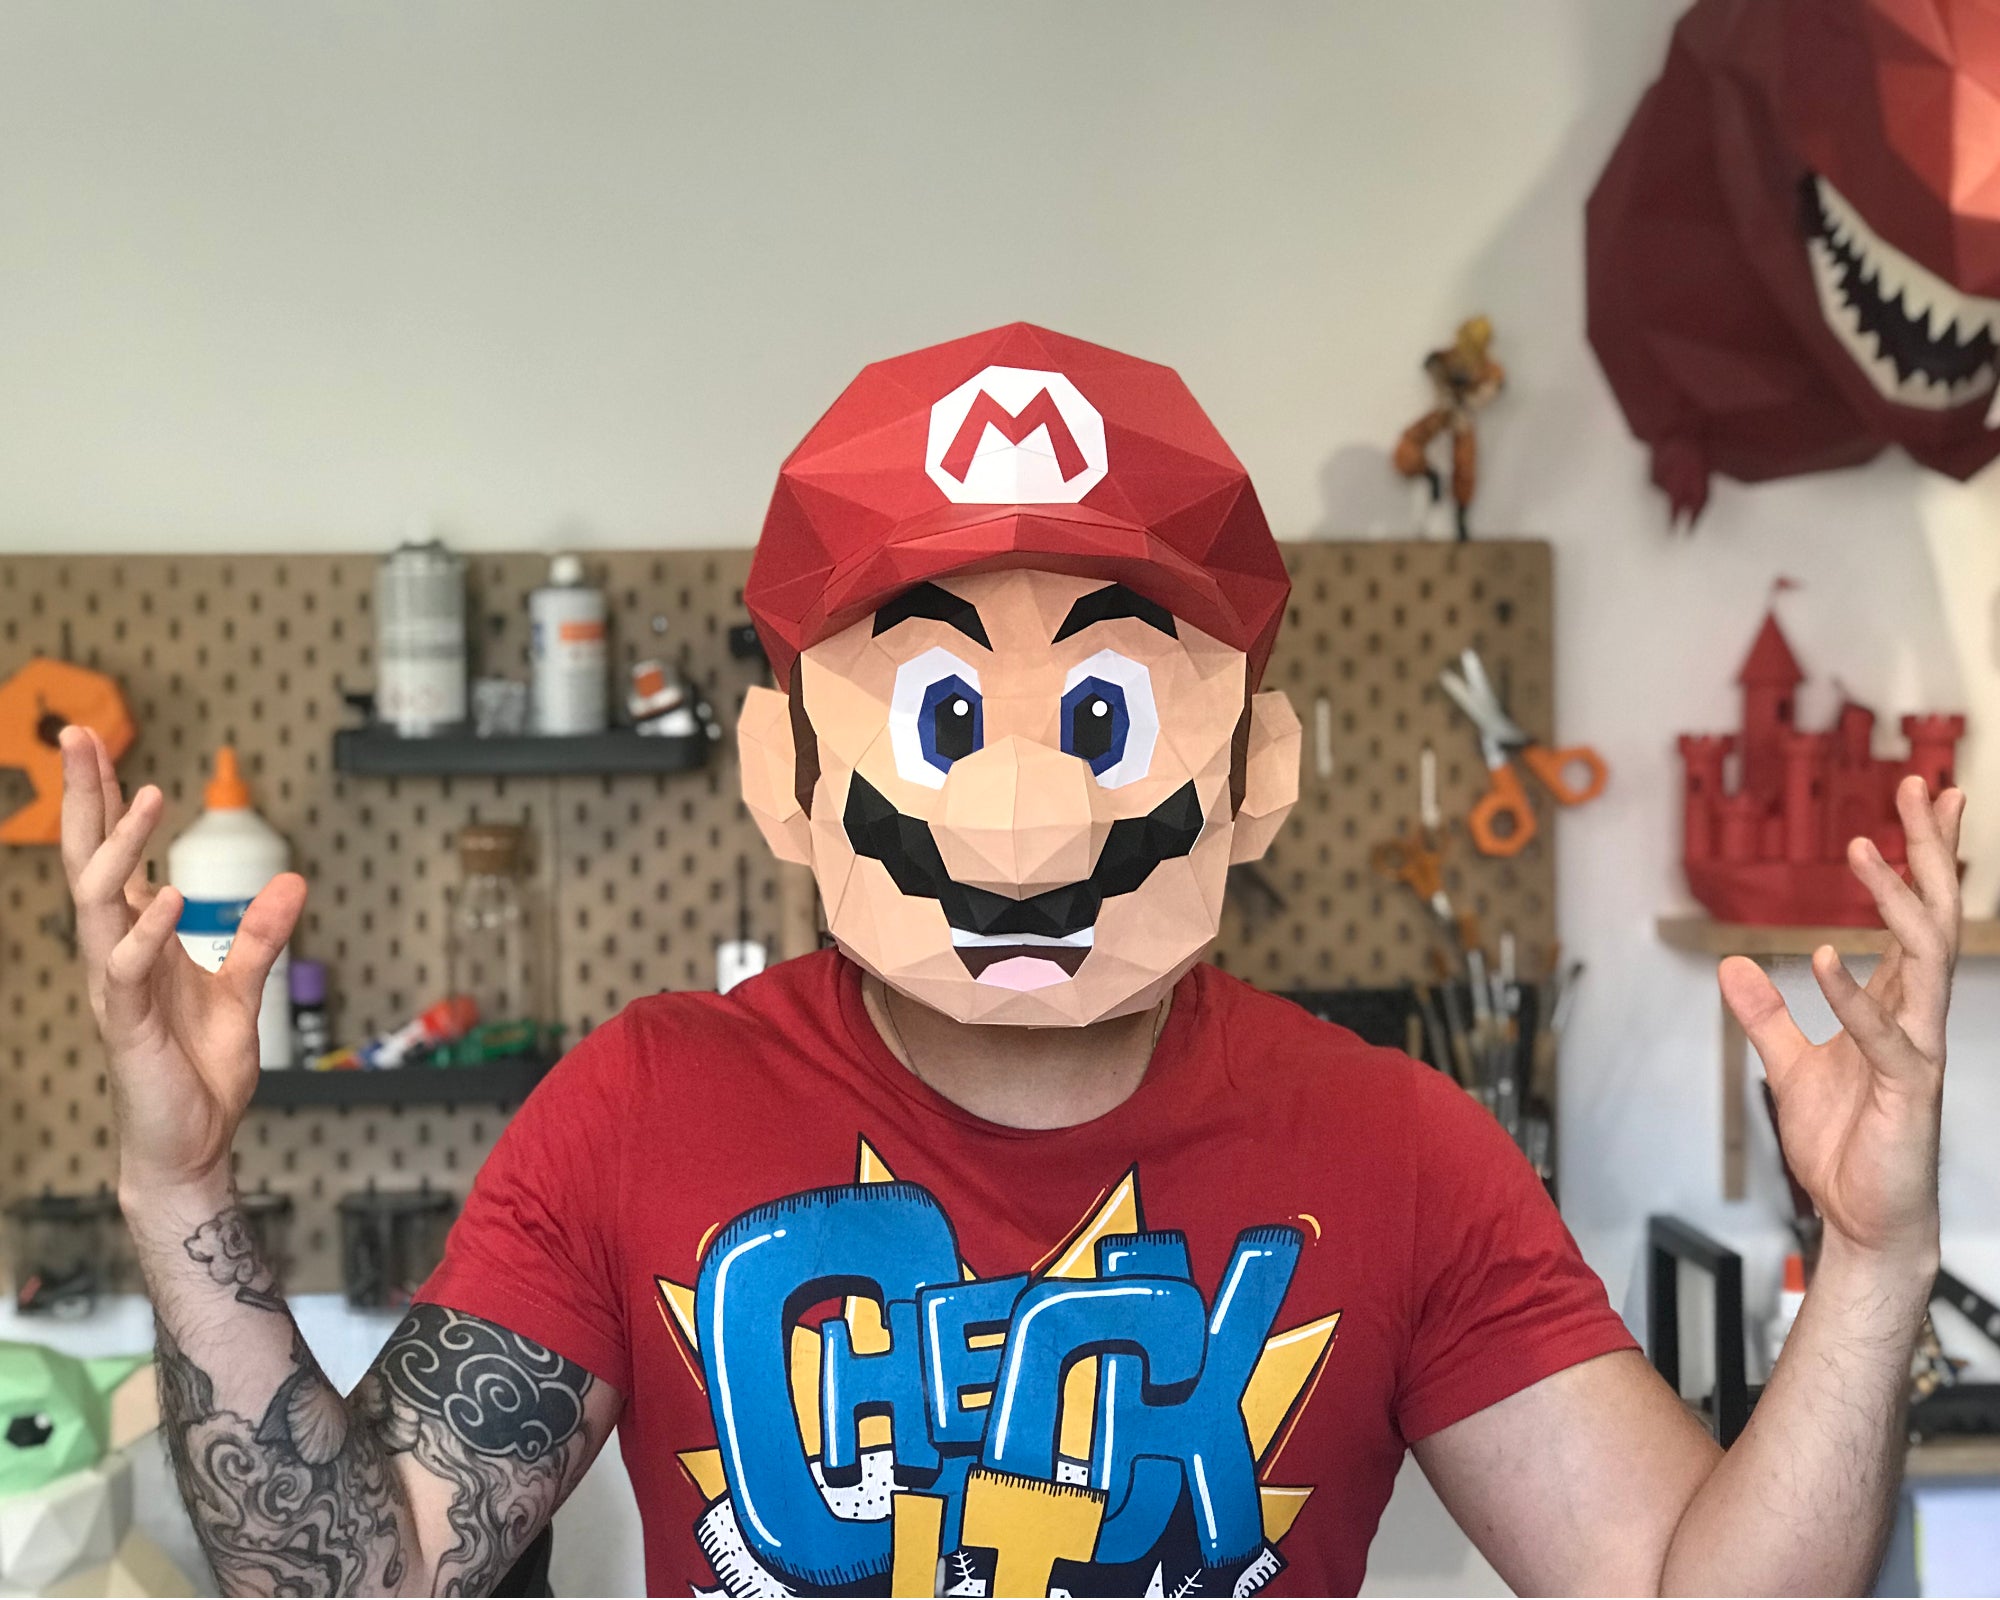 Patrons Masque Super Mario (pdf)